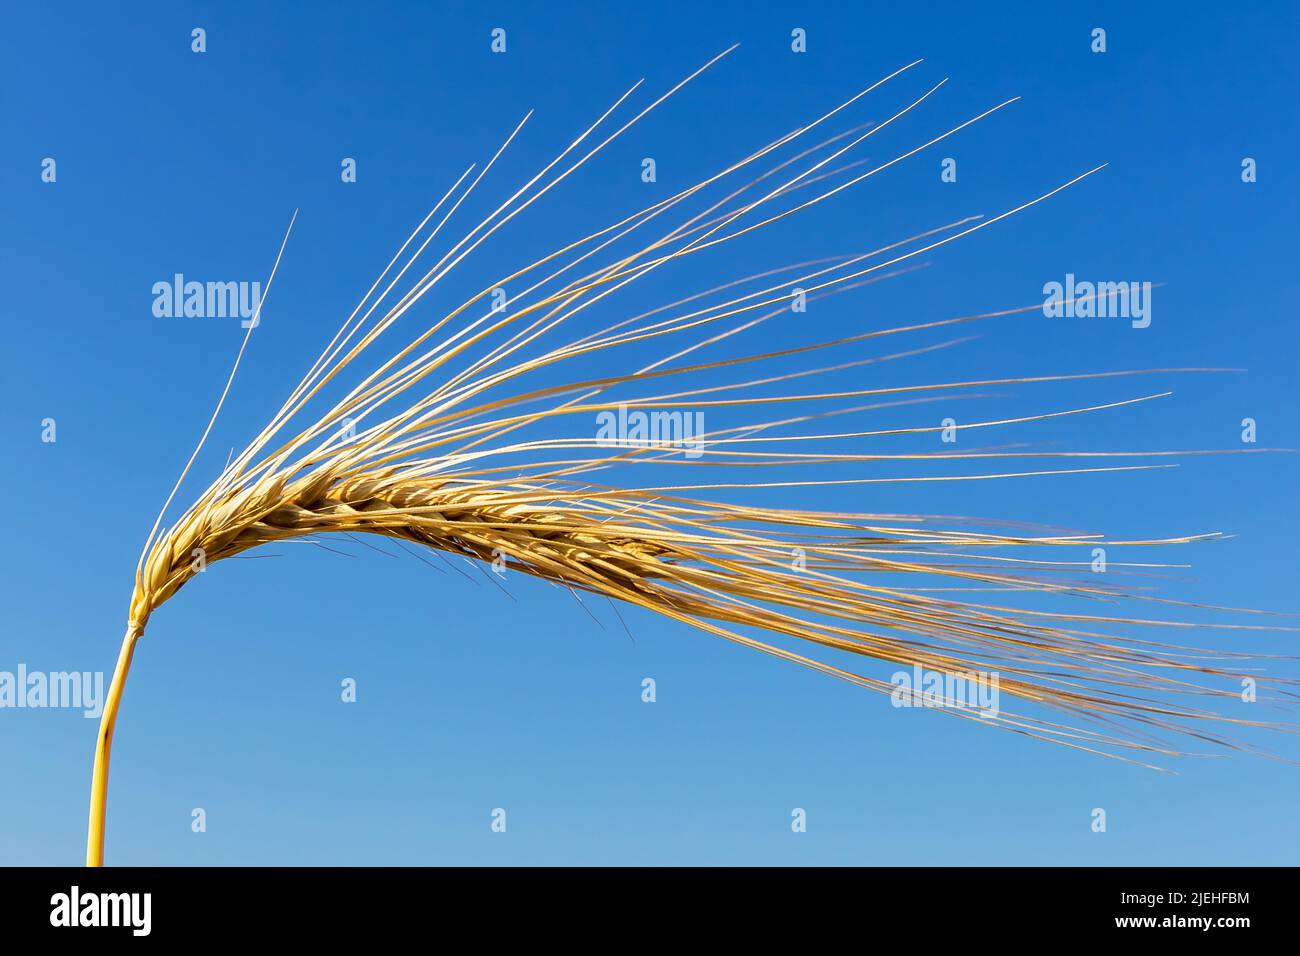 Ein Getreidefeld mit Gerste wartet auf die Ernte. Symbolfato für Landwirtschaft und gesunde Ernährung. Einzelne Ähre, blauer Himmel, Lorn, Kornfeld, P. Foto Stock